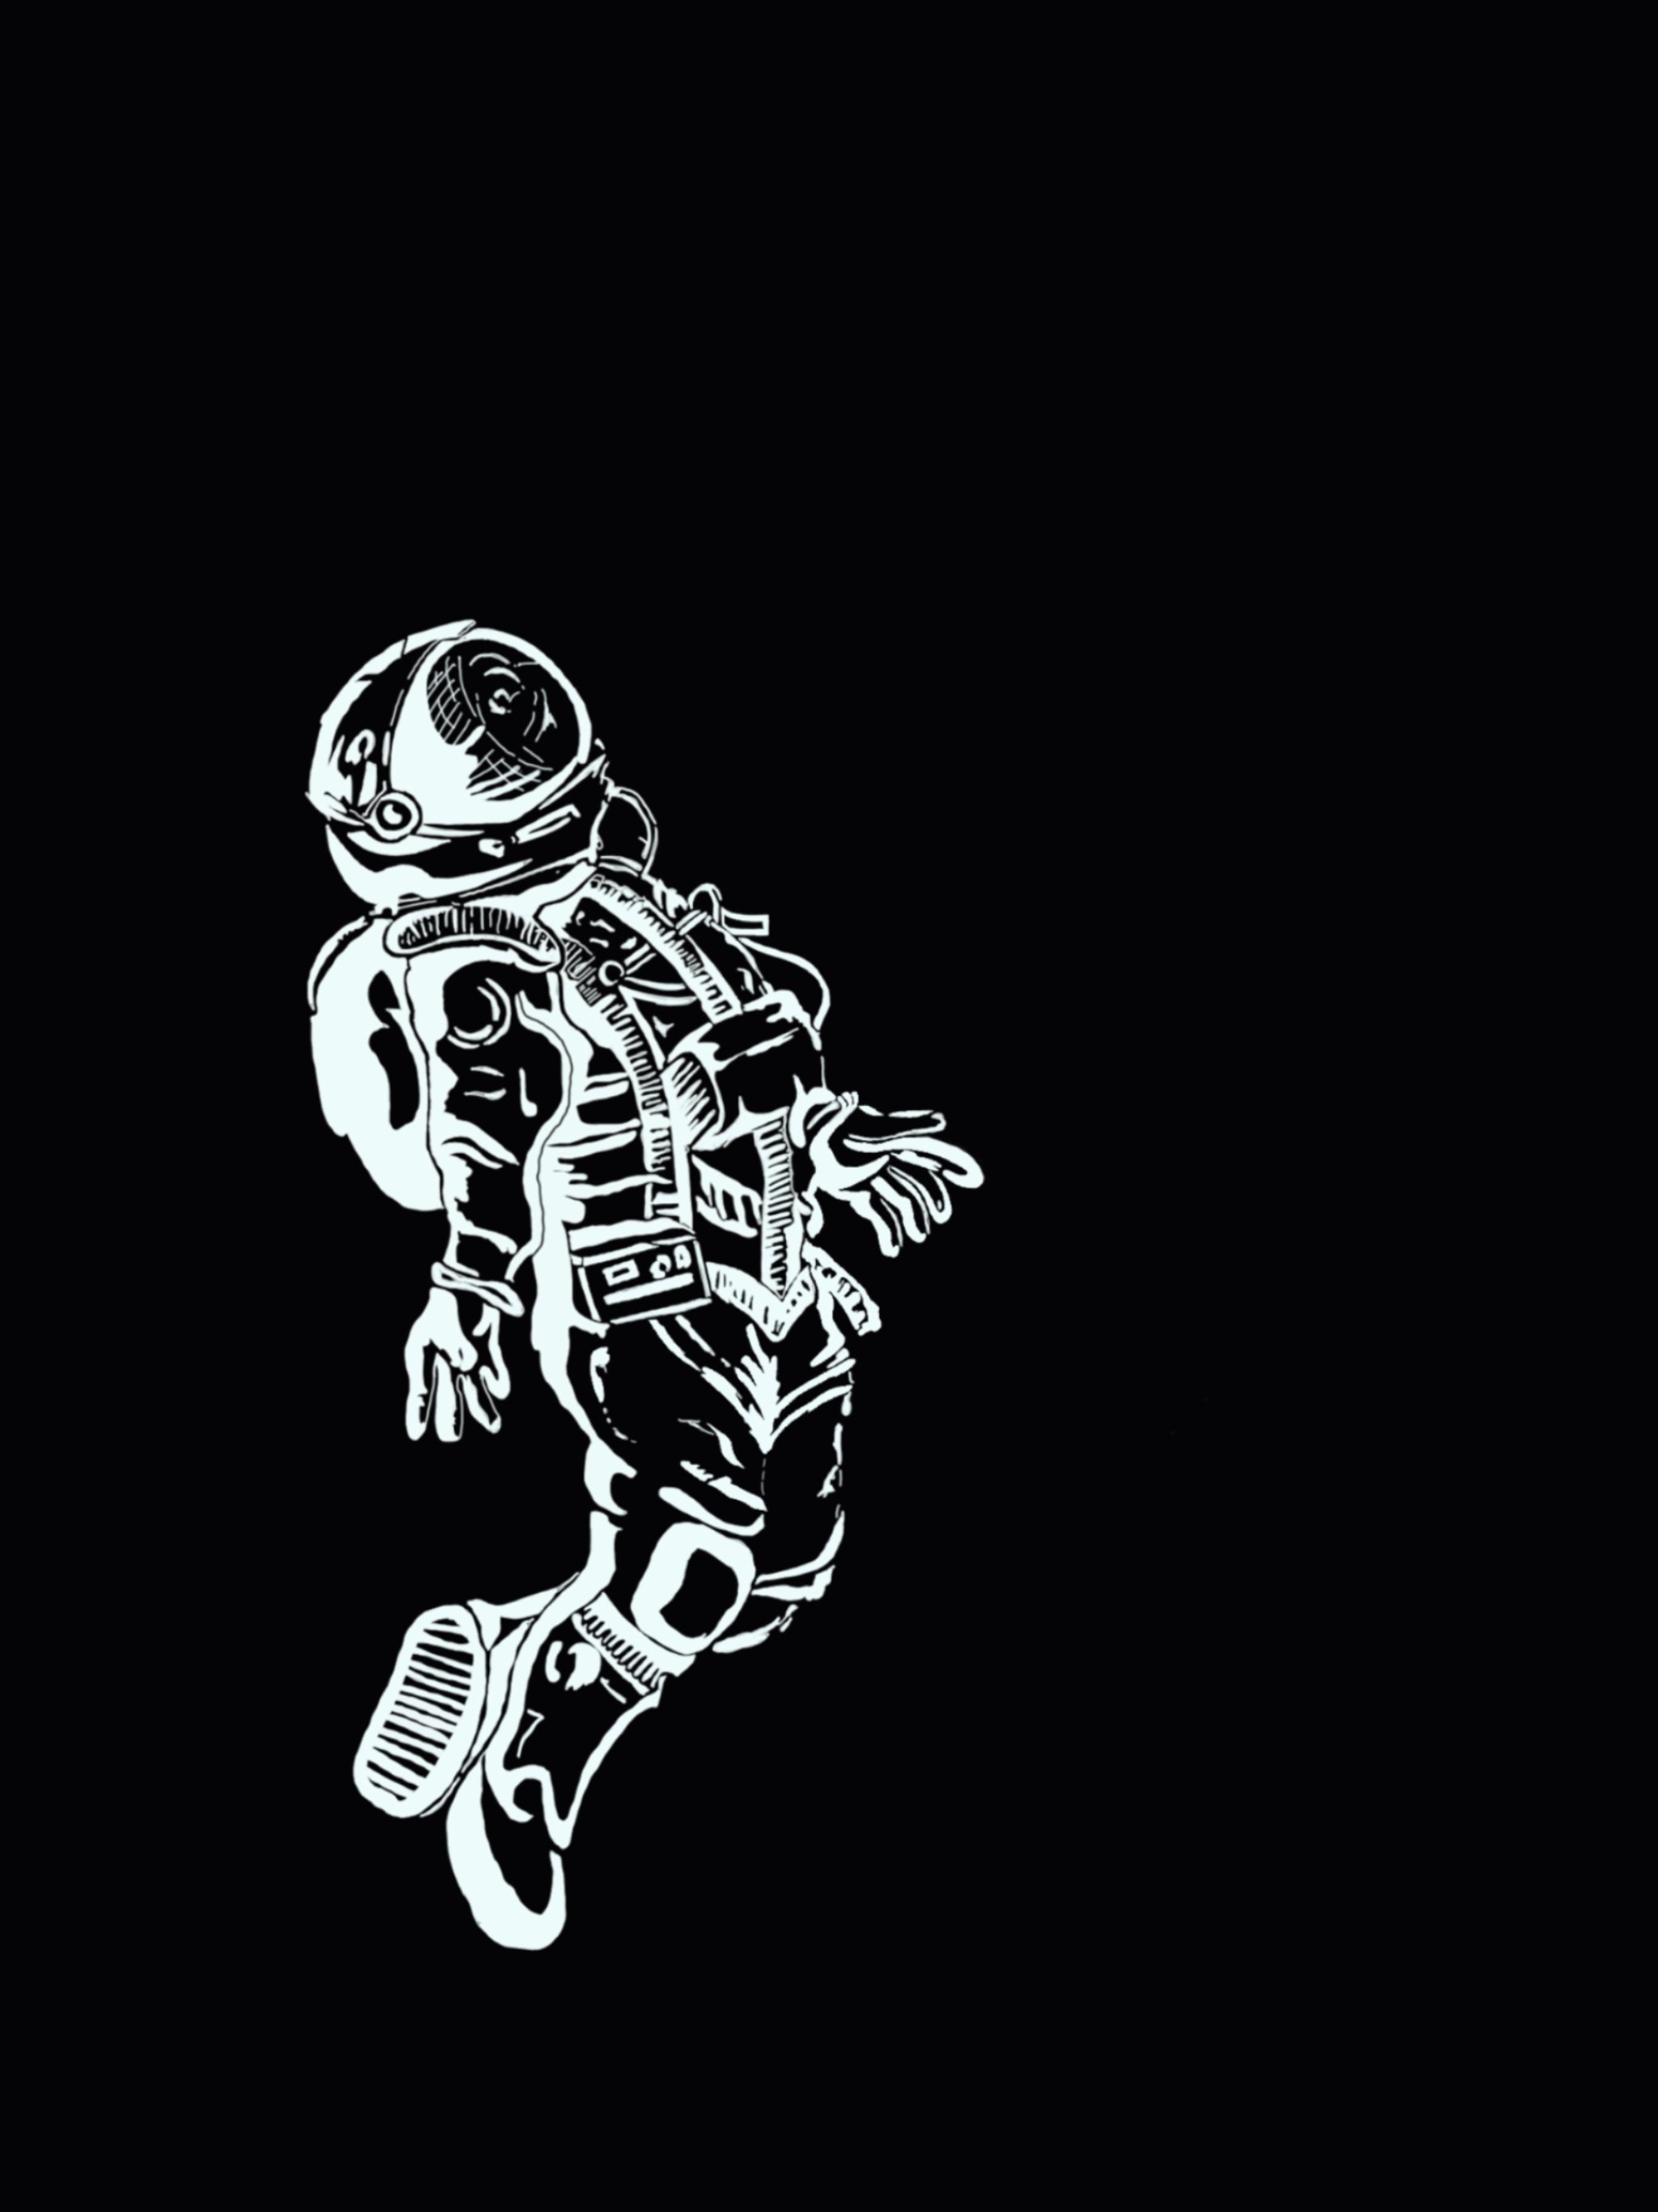   The Astronaut    Medium: Digital Art    by Aspen Garner  